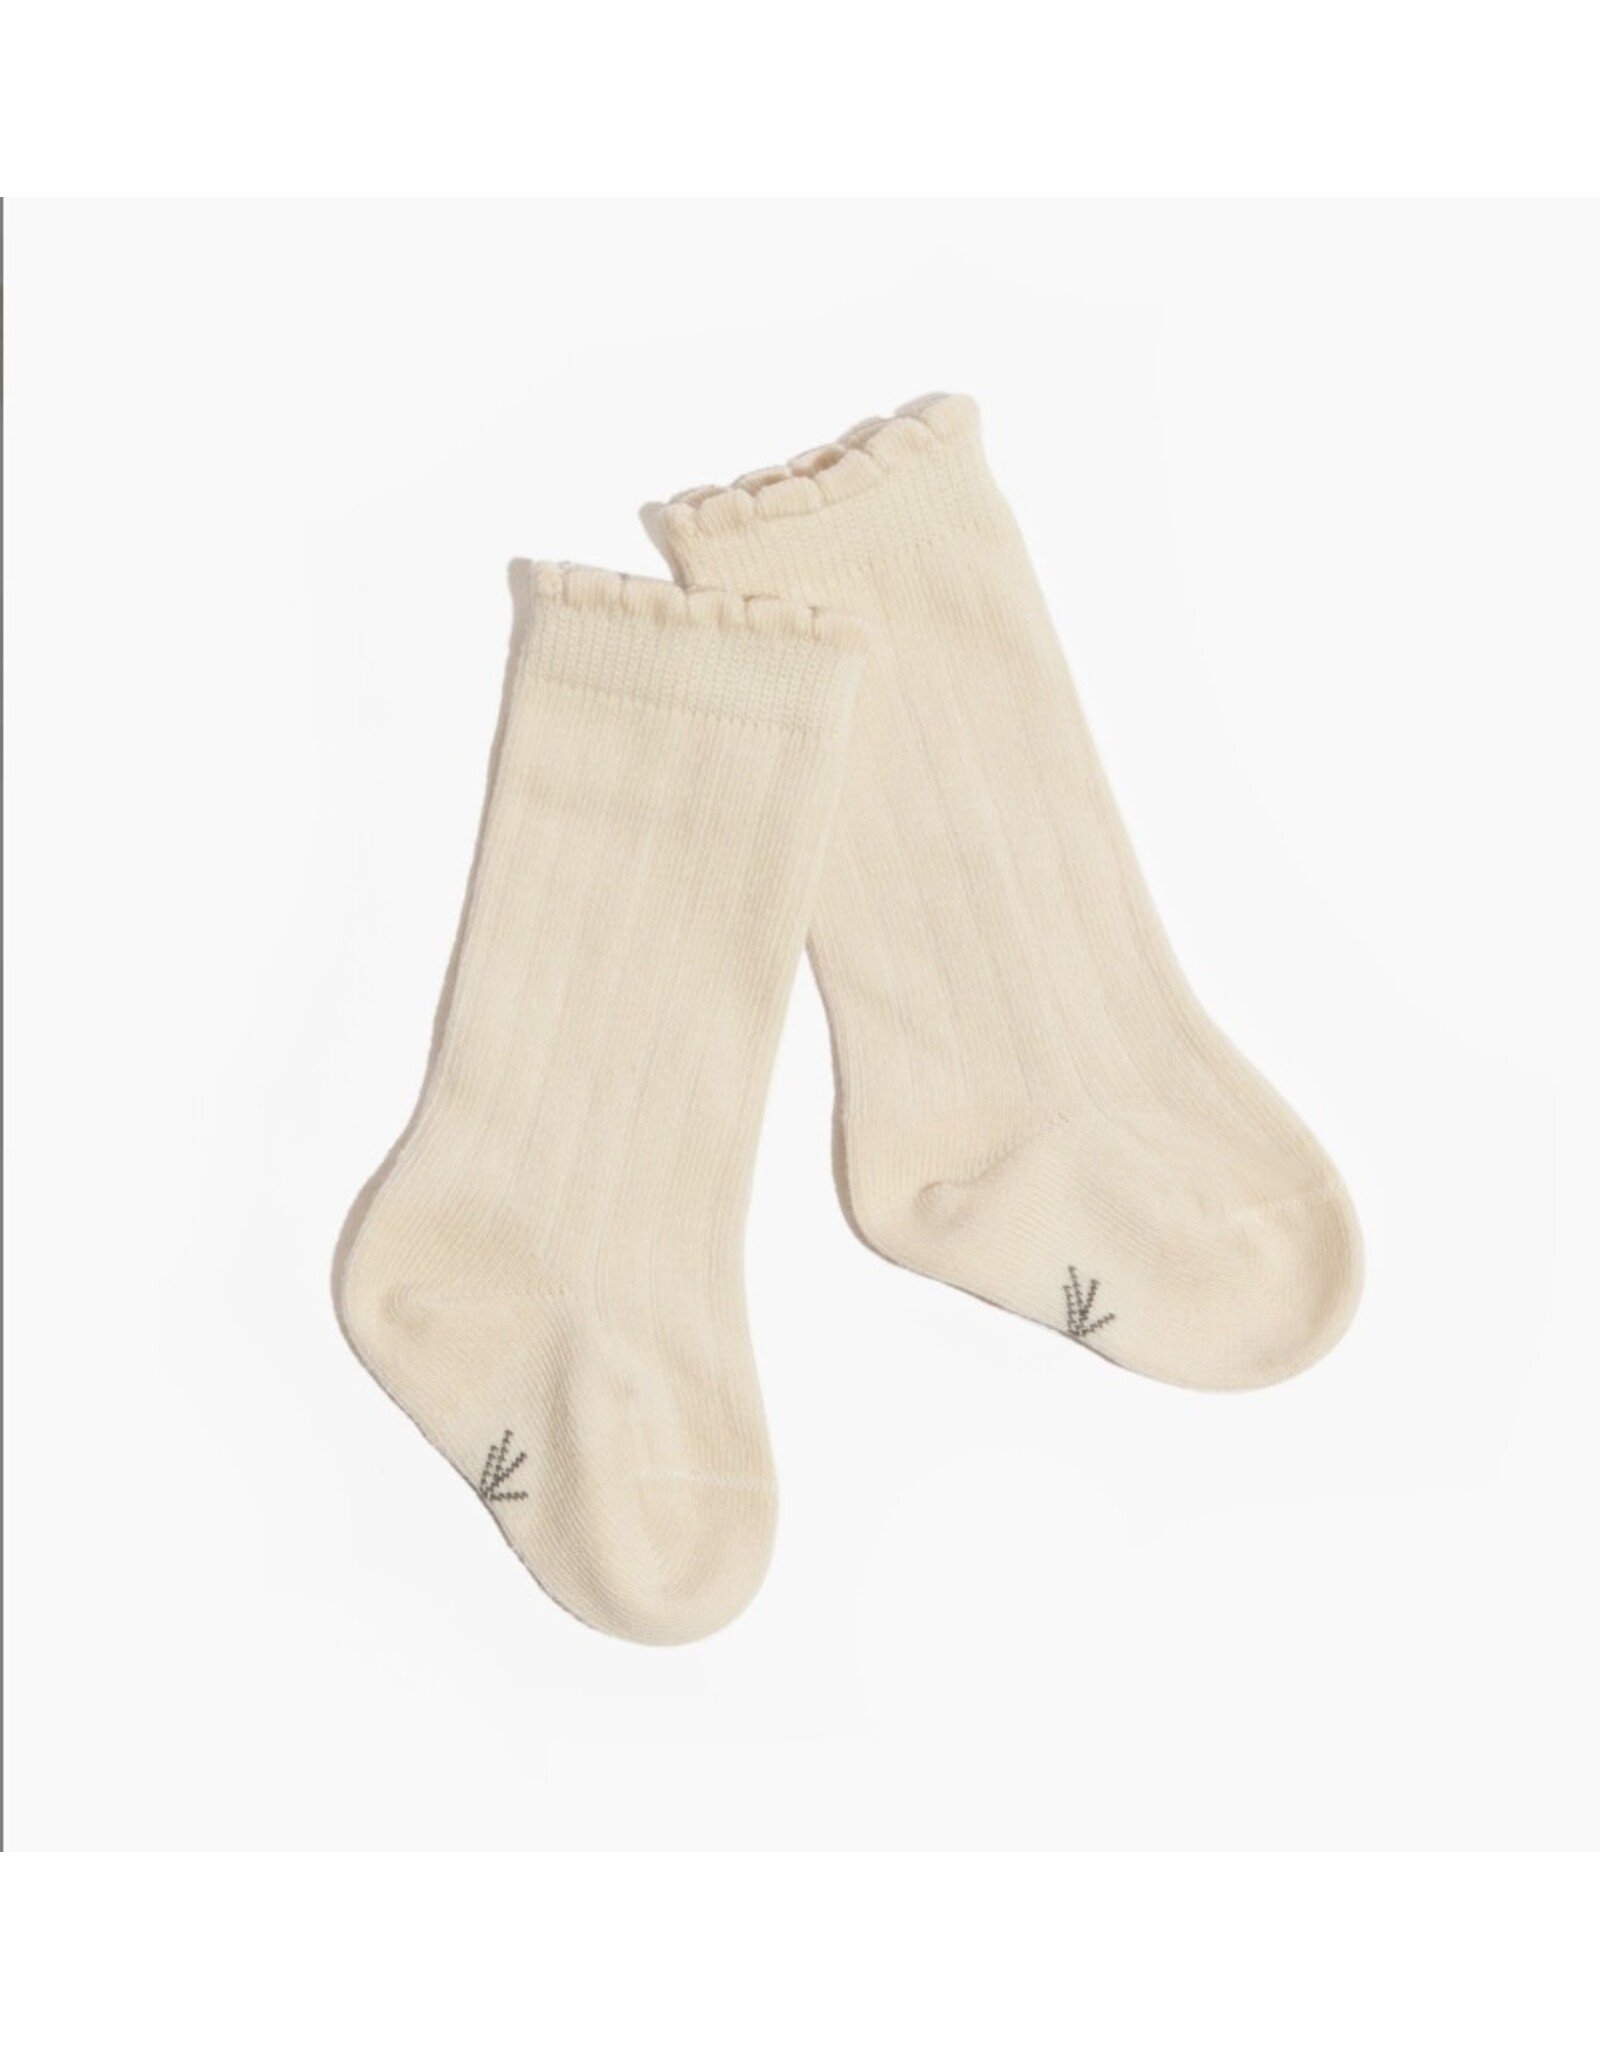 Freshly Picked Freshly Picked- Ivory Scalloped Knee High Sock